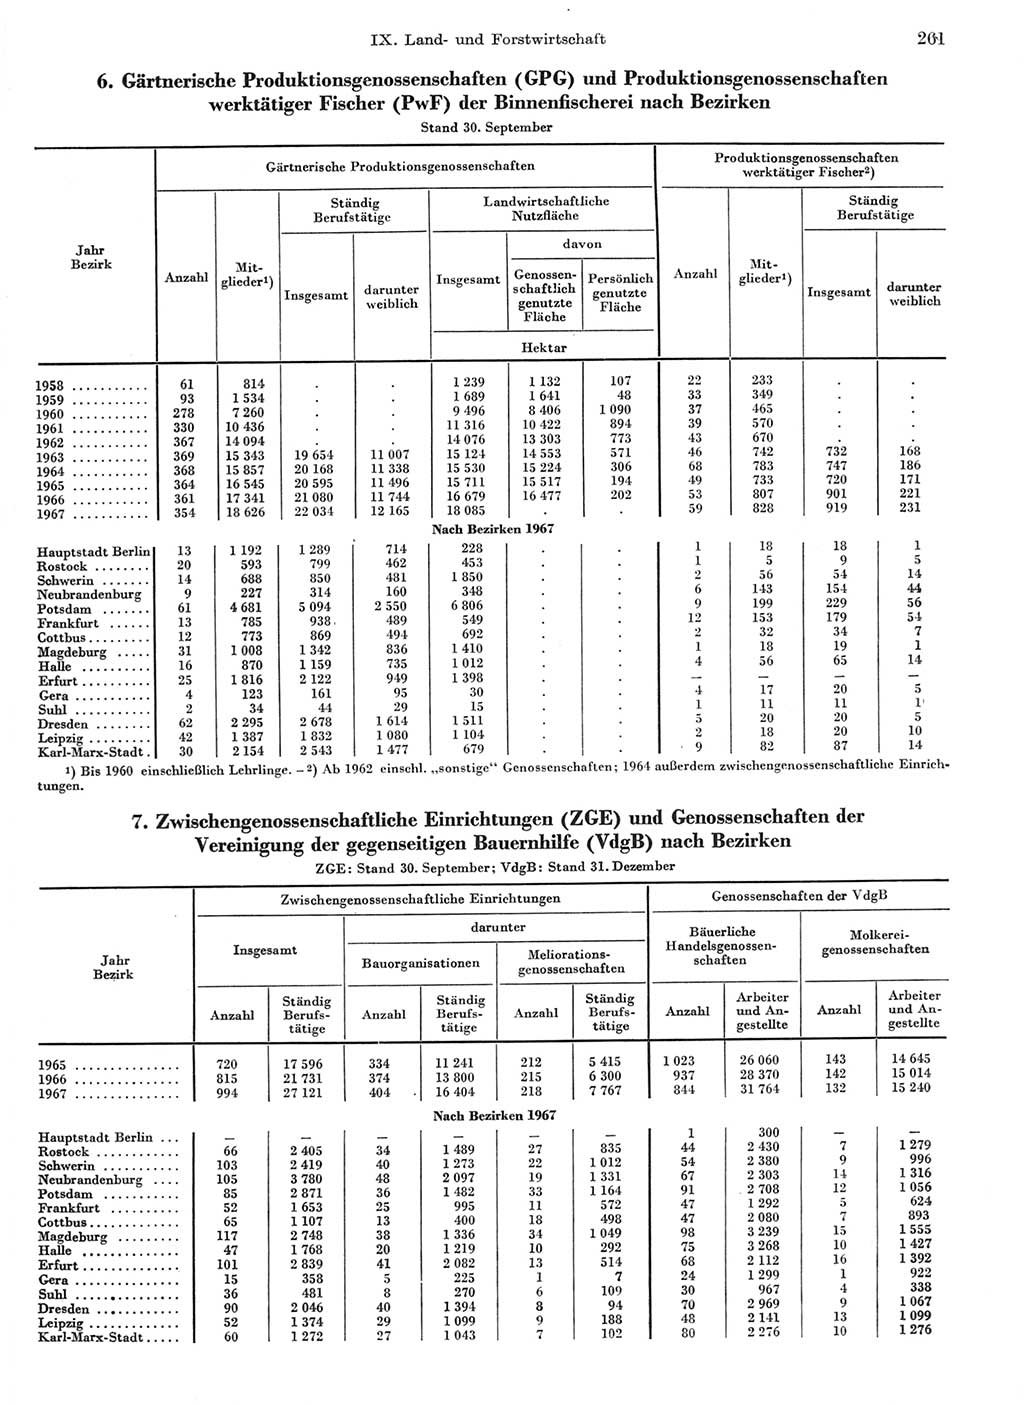 Statistisches Jahrbuch der Deutschen Demokratischen Republik (DDR) 1968, Seite 261 (Stat. Jb. DDR 1968, S. 261)